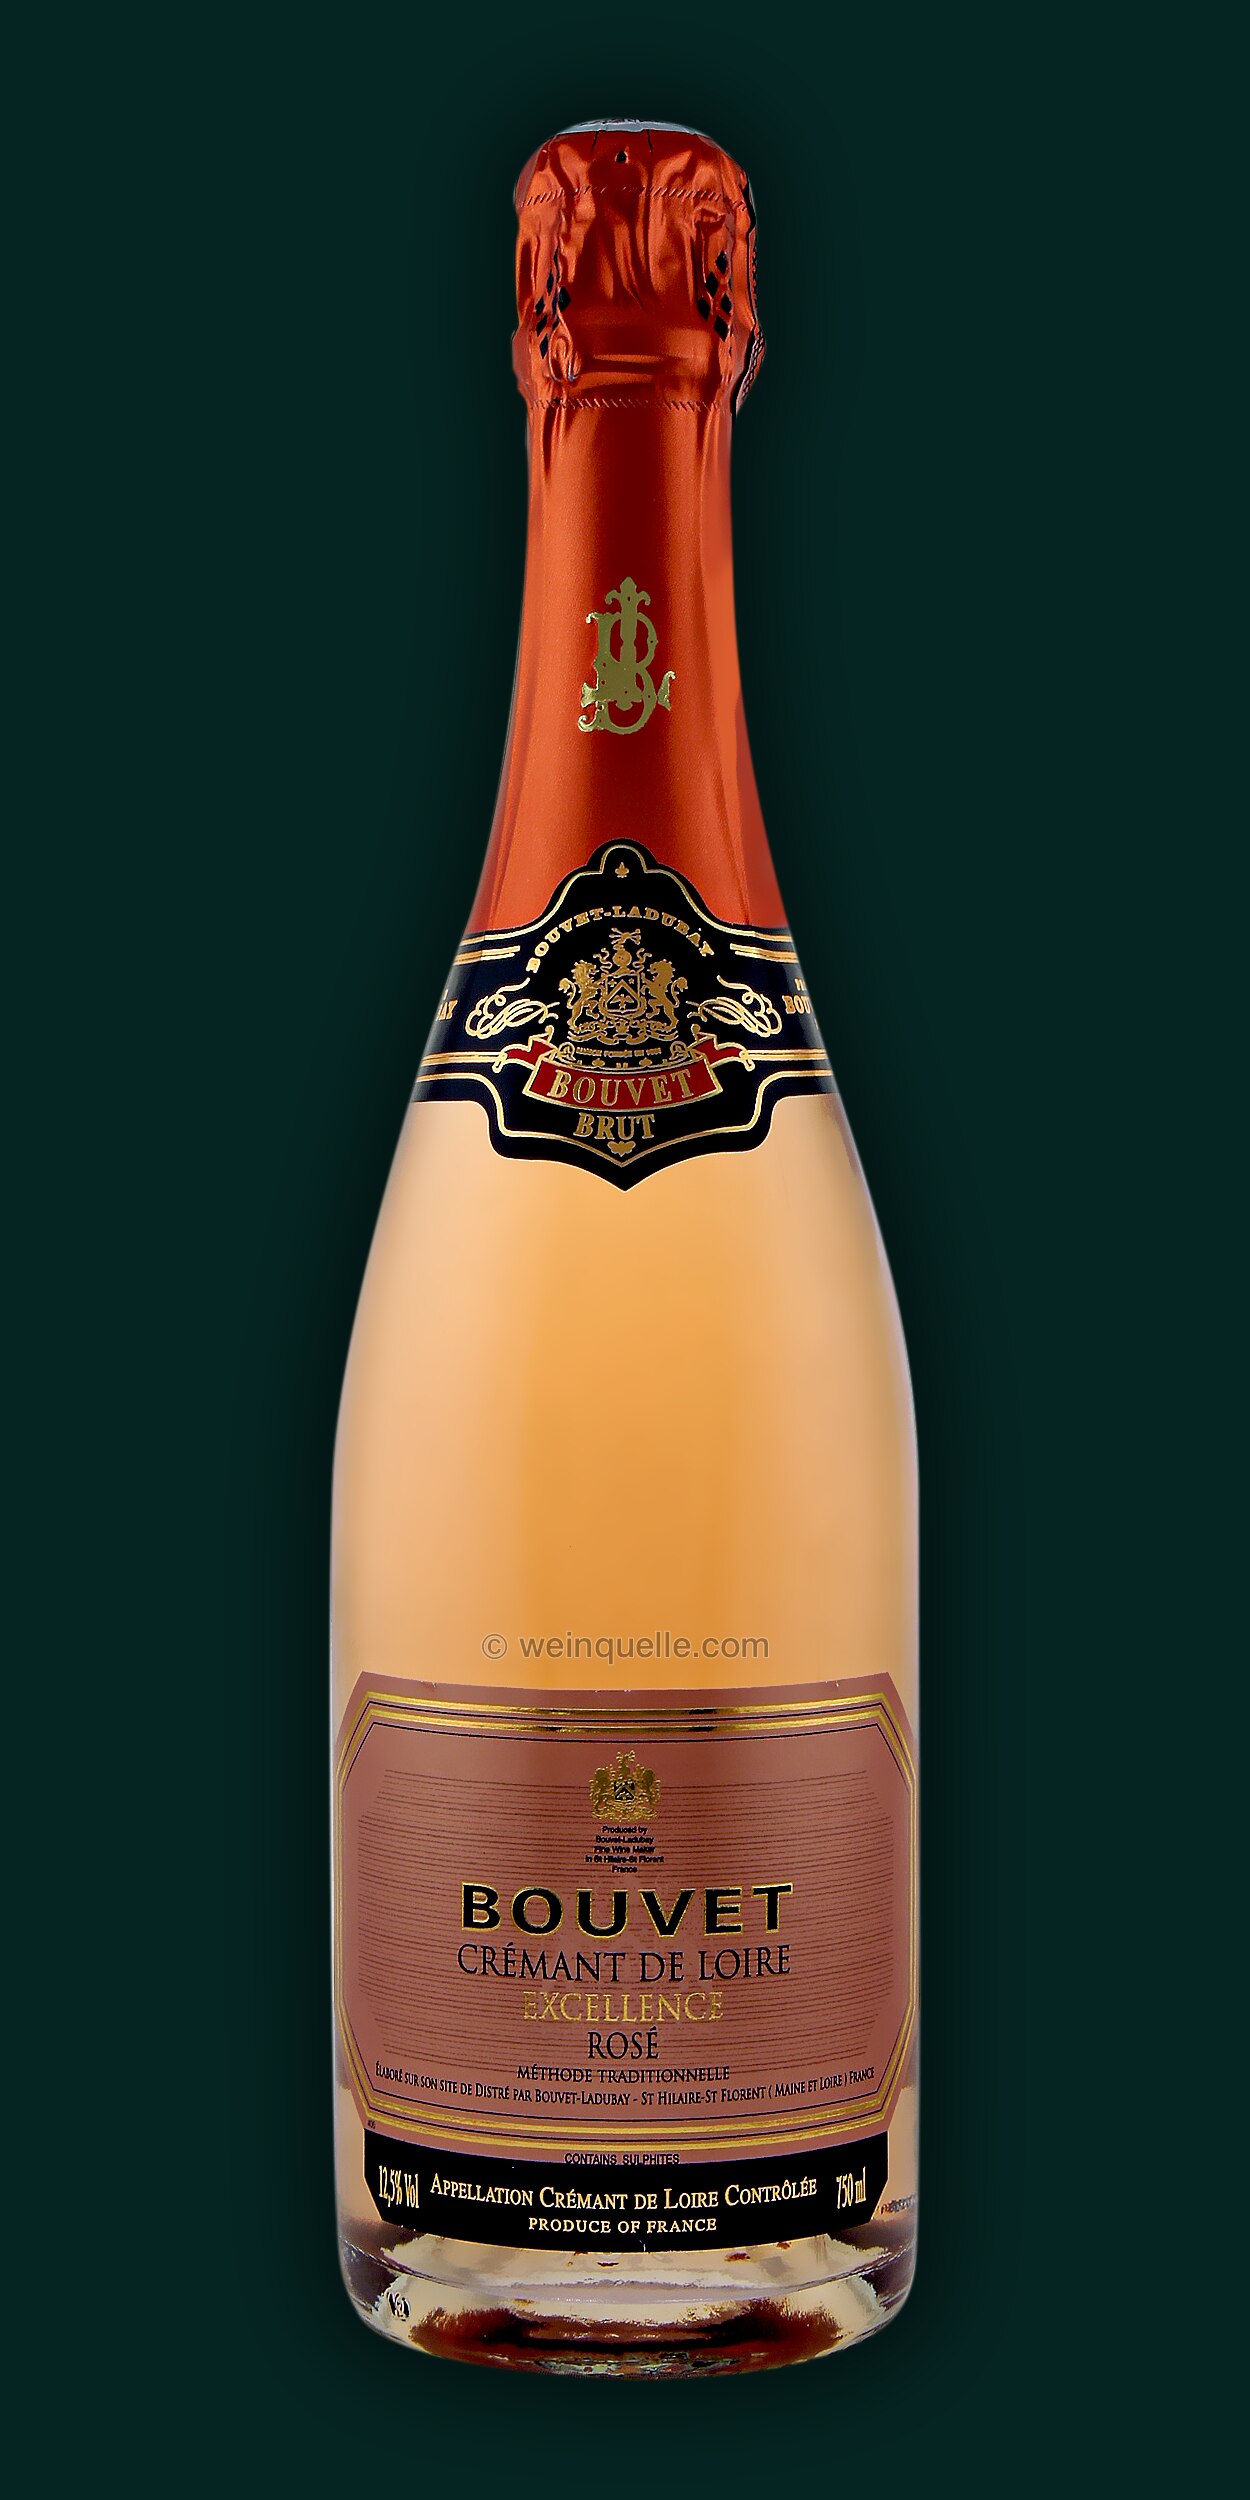 12,95 € Loire Lühmann Bouvet Weinquelle Cremant - de Rosé, Excellence